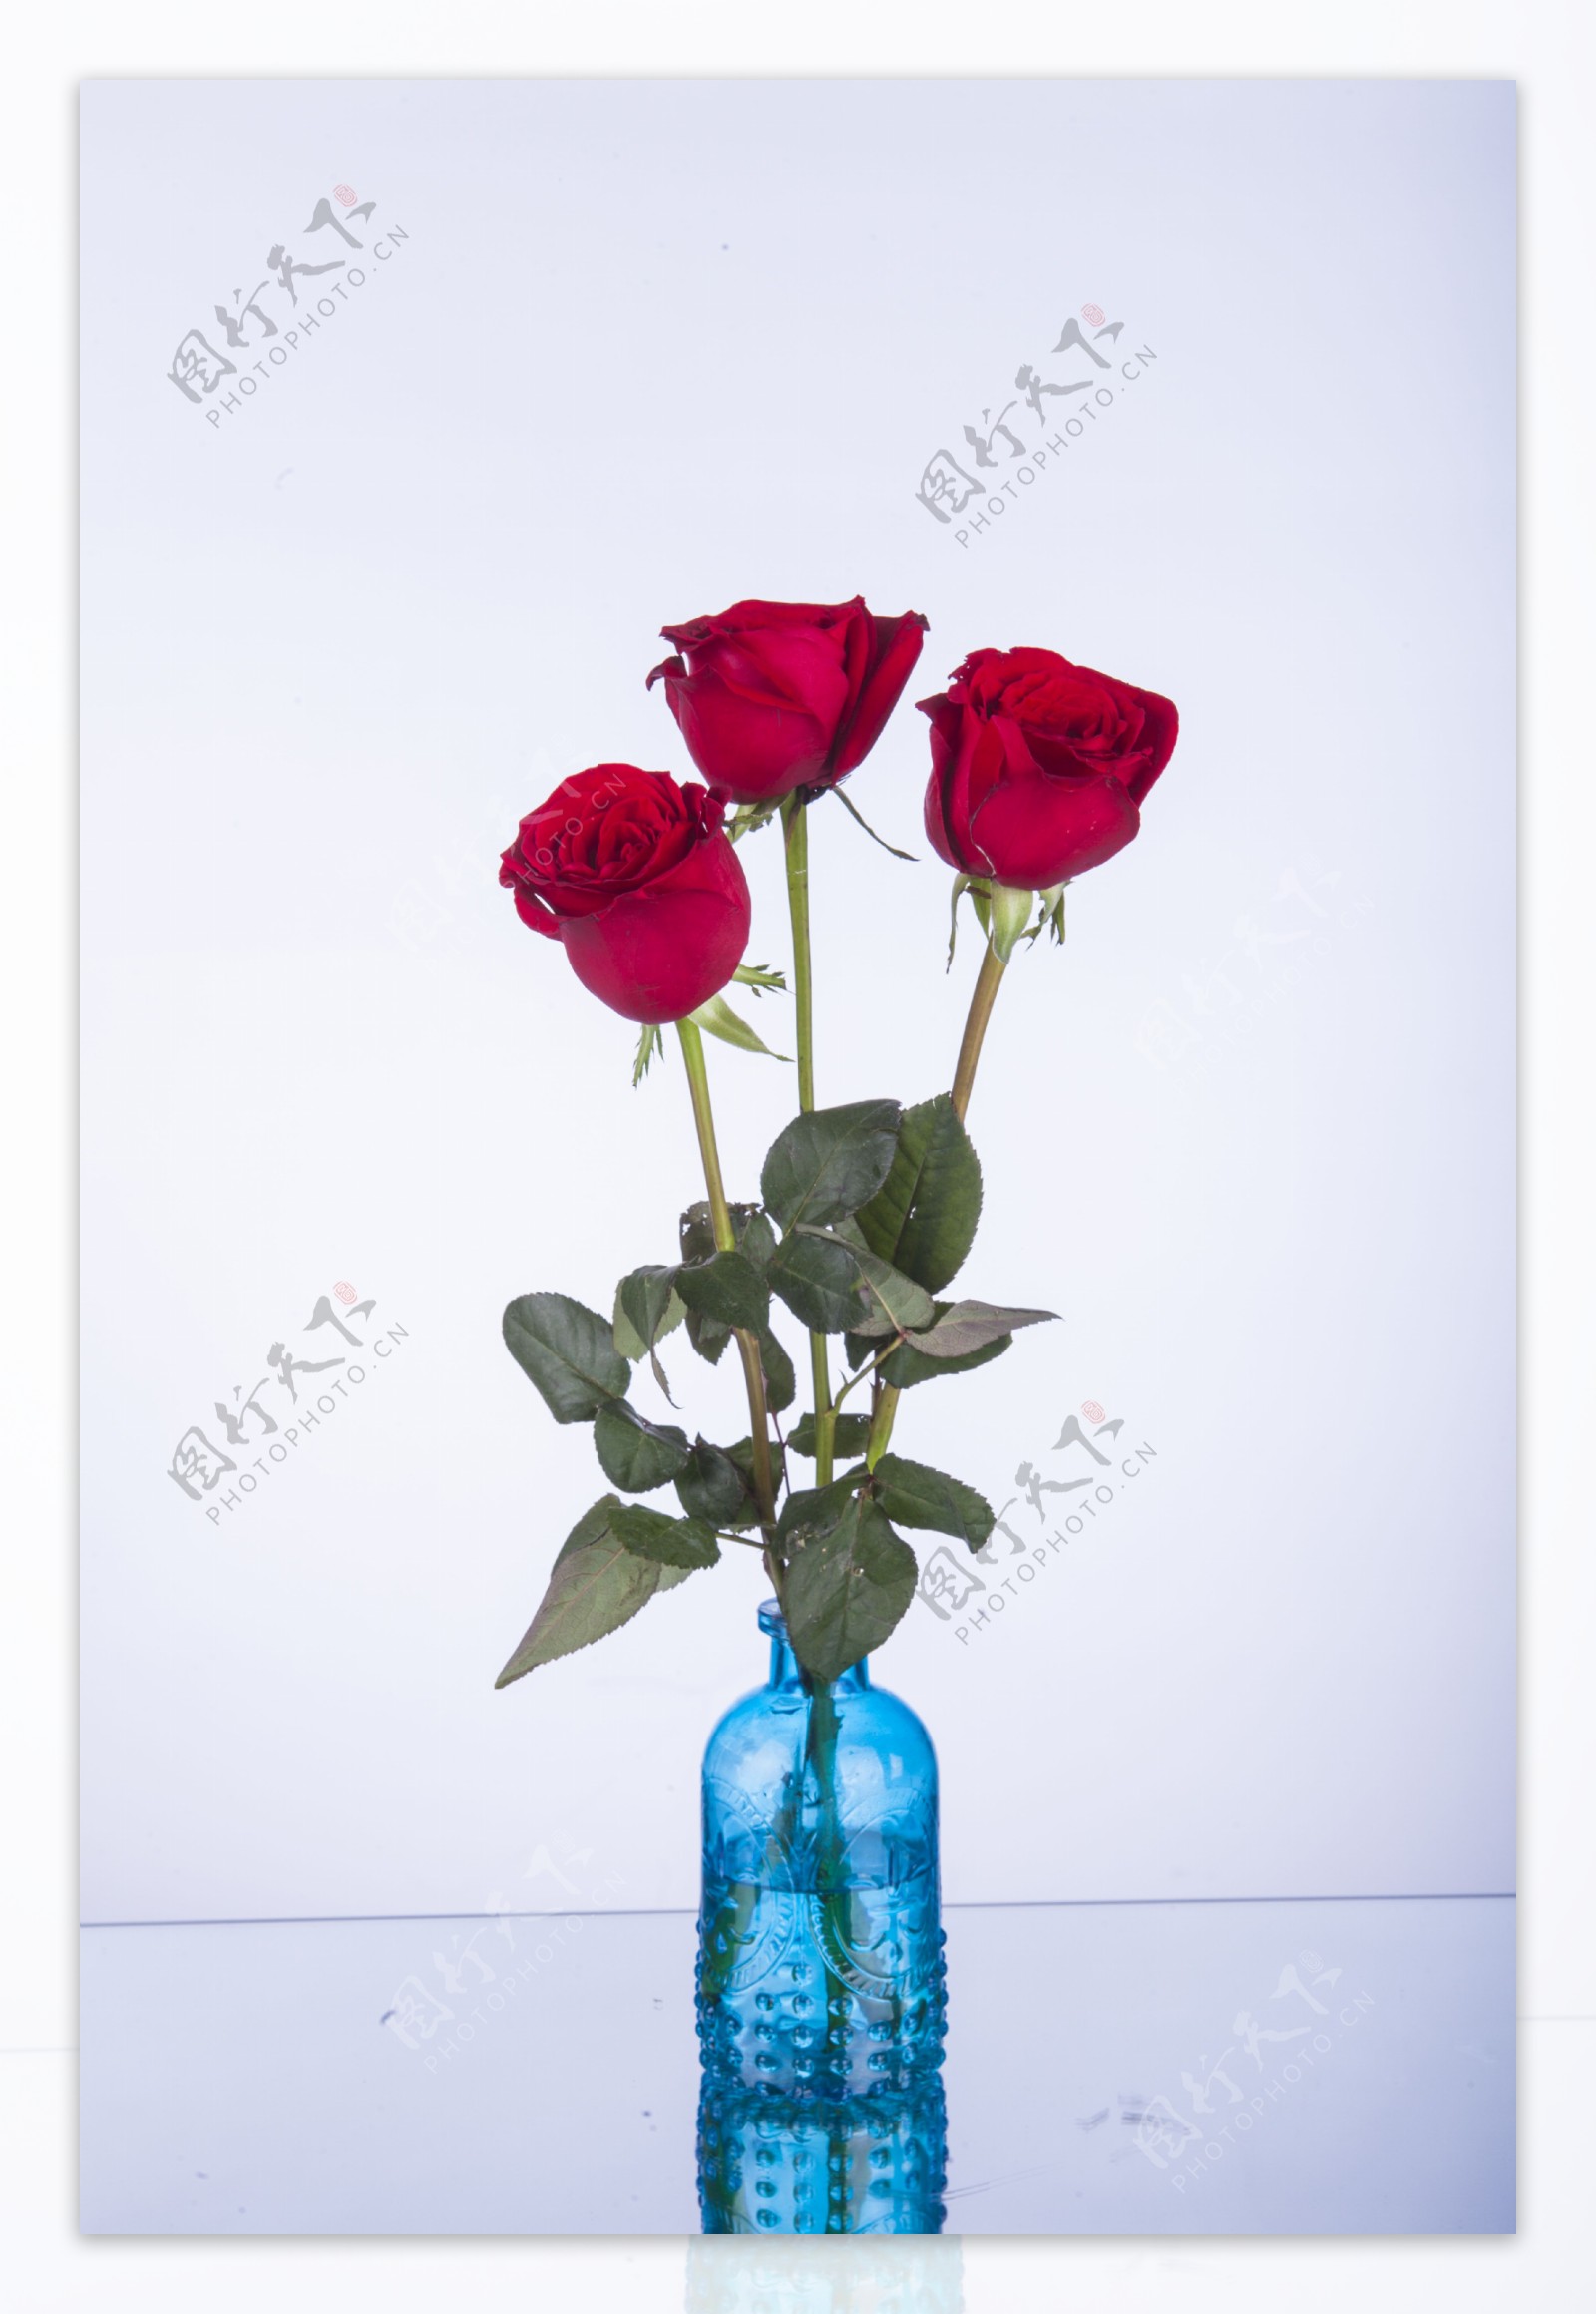 鲜艳红色玫瑰摄影图